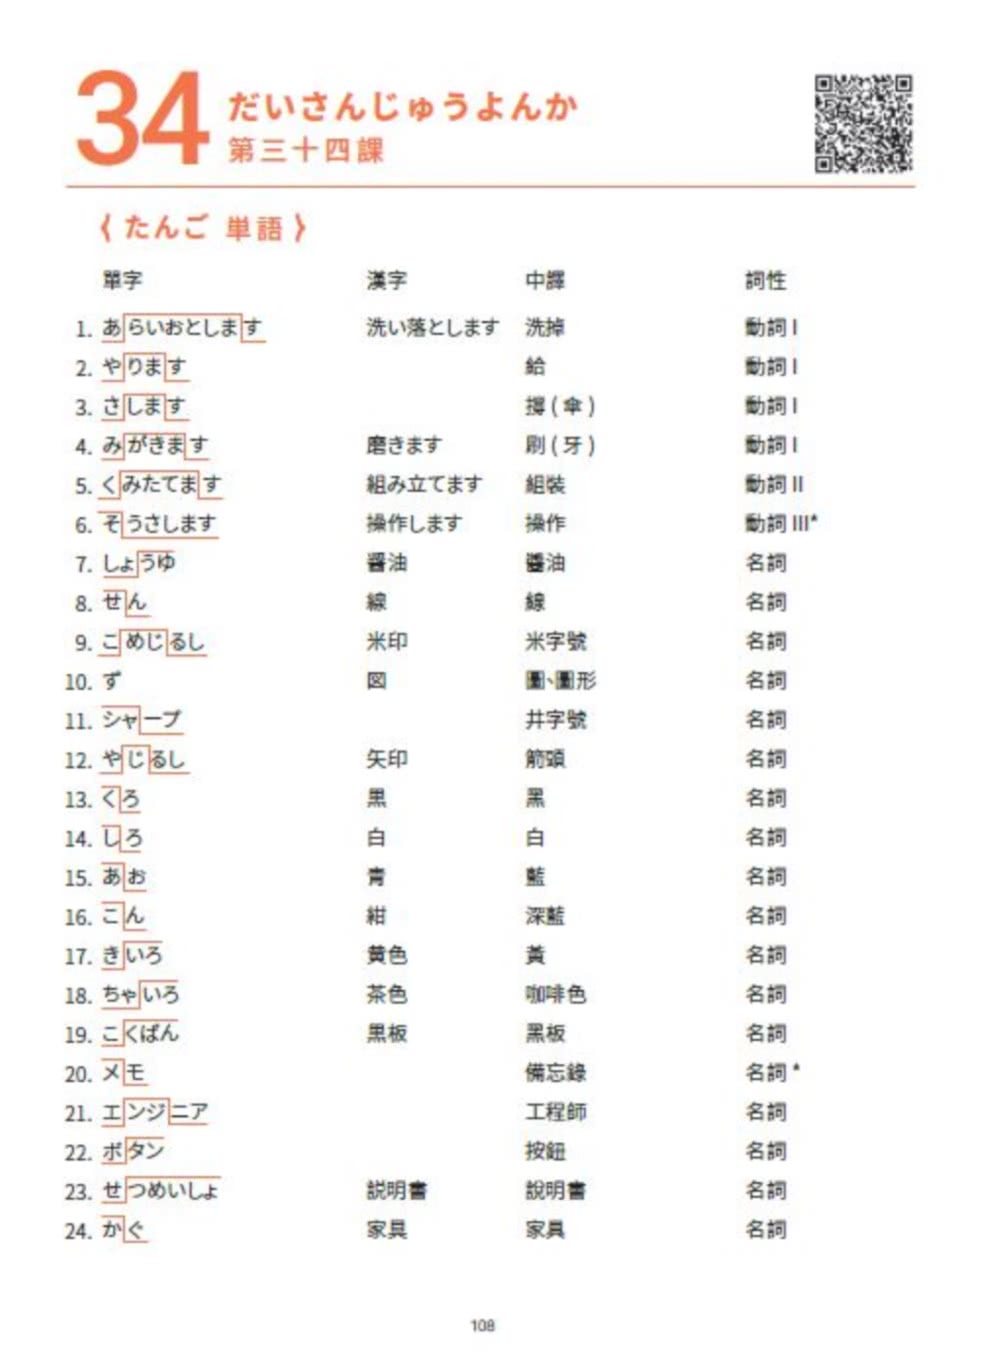 大家一起學習日文吧！王可樂日語初級直達車3：詳盡文法、大量練習題、豐富附錄